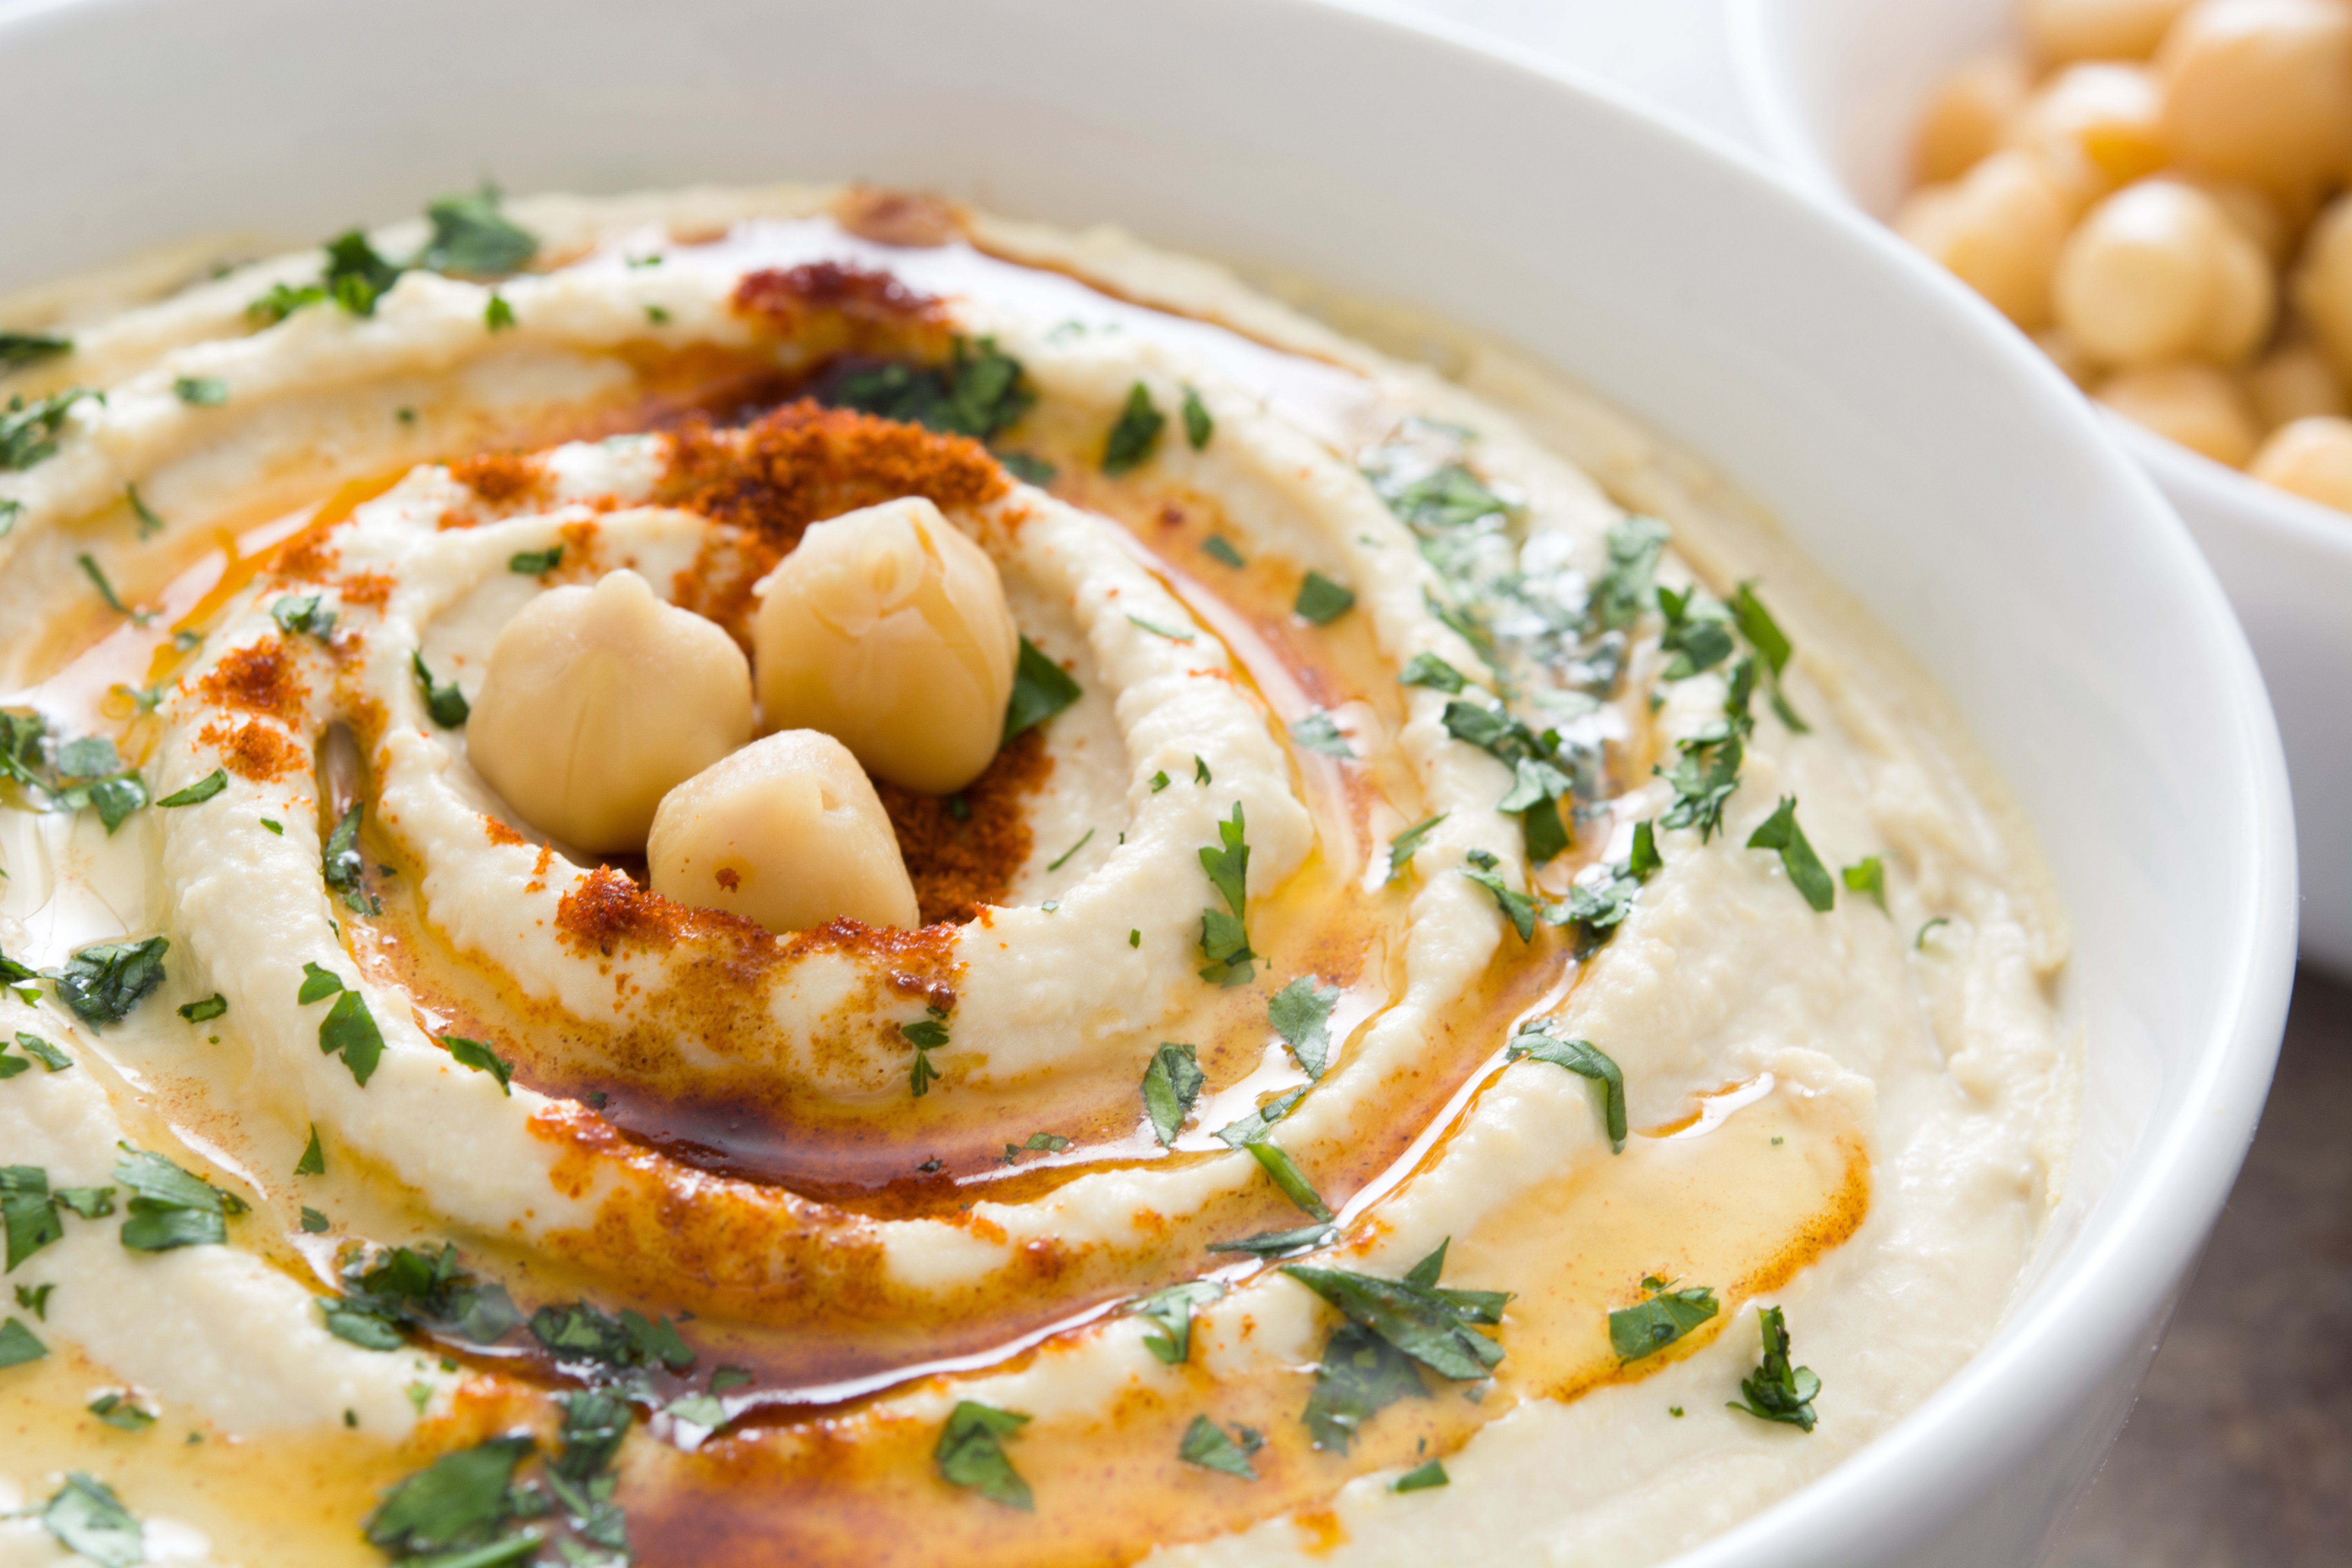 Hummus de garbanzo con aceite de oliva y perejil picado. | Foto: Shutterstock